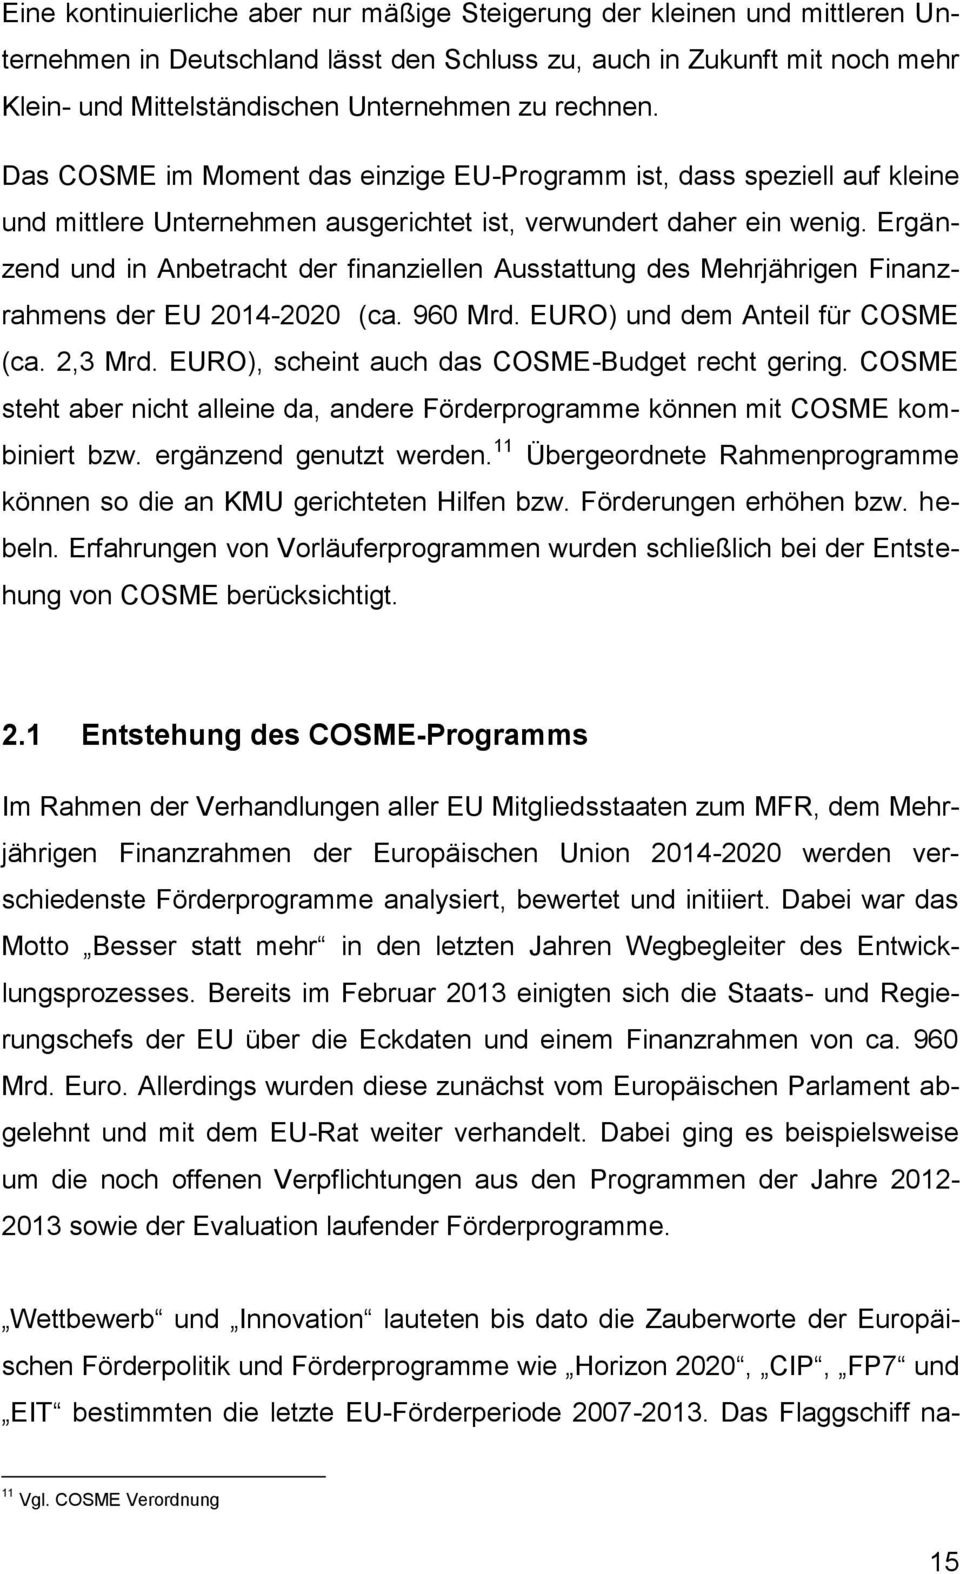 Ergänzend und in Anbetracht der finanziellen Ausstattung des Mehrjährigen Finanzrahmens der EU 2014-2020 (ca. 960 Mrd. EURO) und dem Anteil für COSME (ca. 2,3 Mrd.